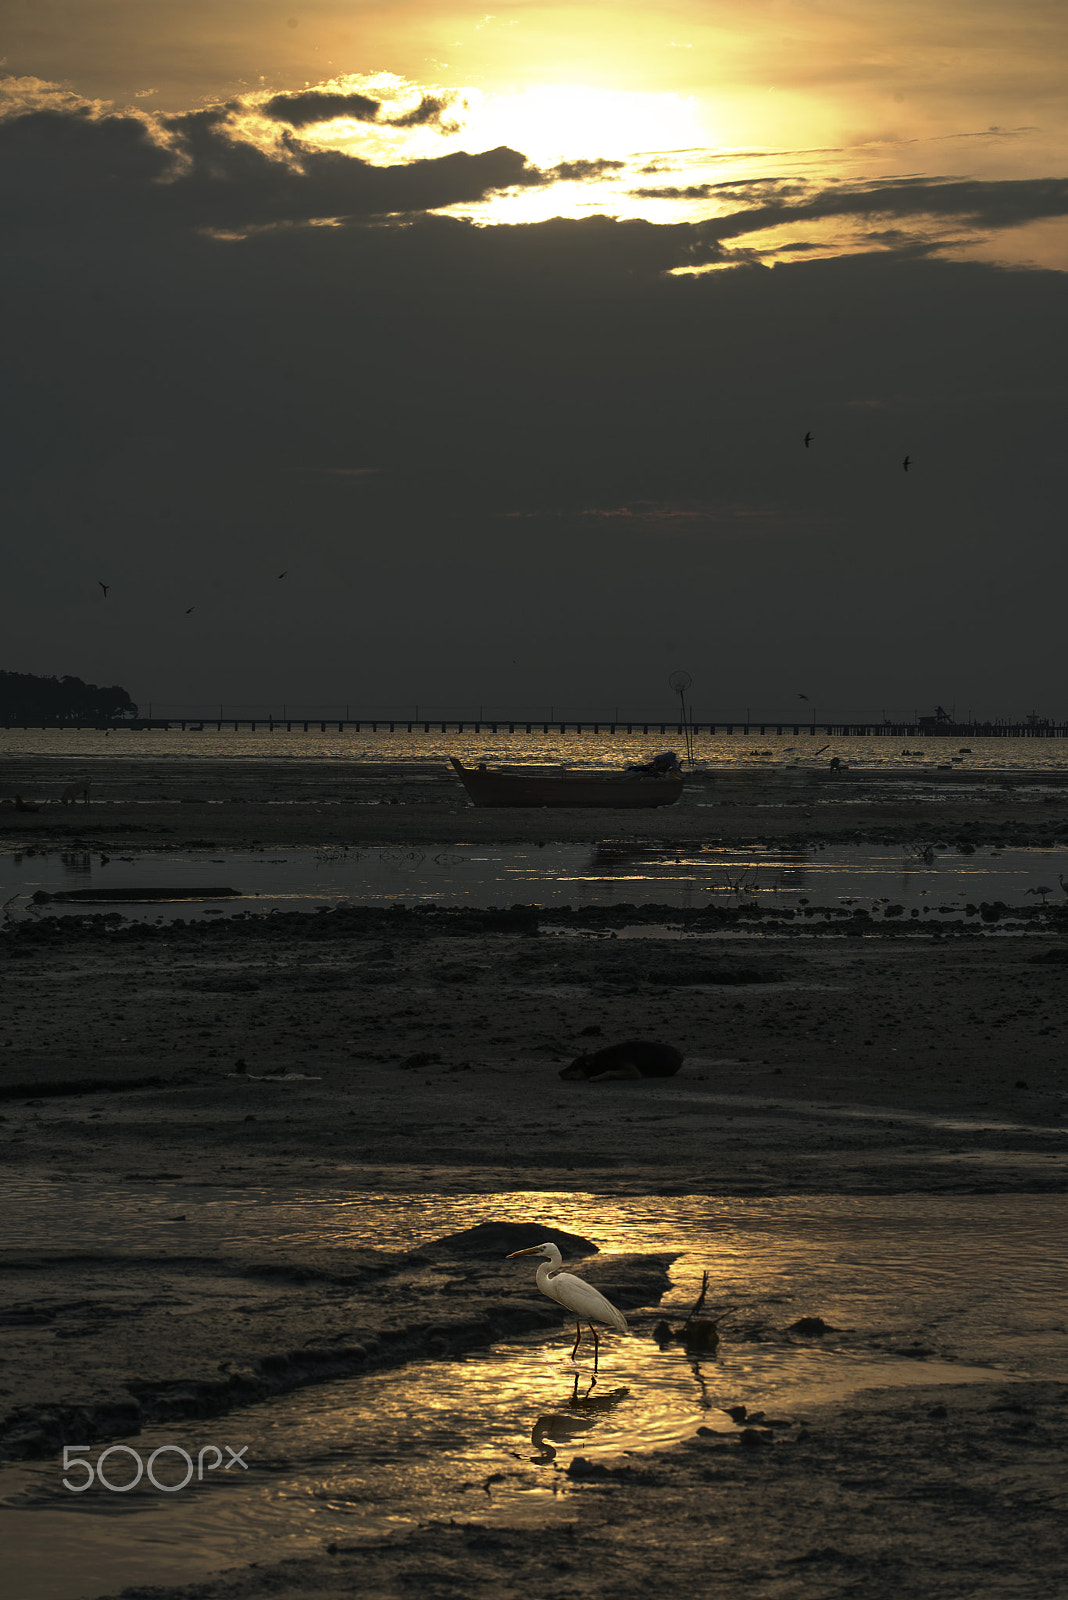 Nikon D750 + Nikon AF-S Nikkor 70-200mm F4G ED VR sample photo. Sunset with egret on the sea. photography